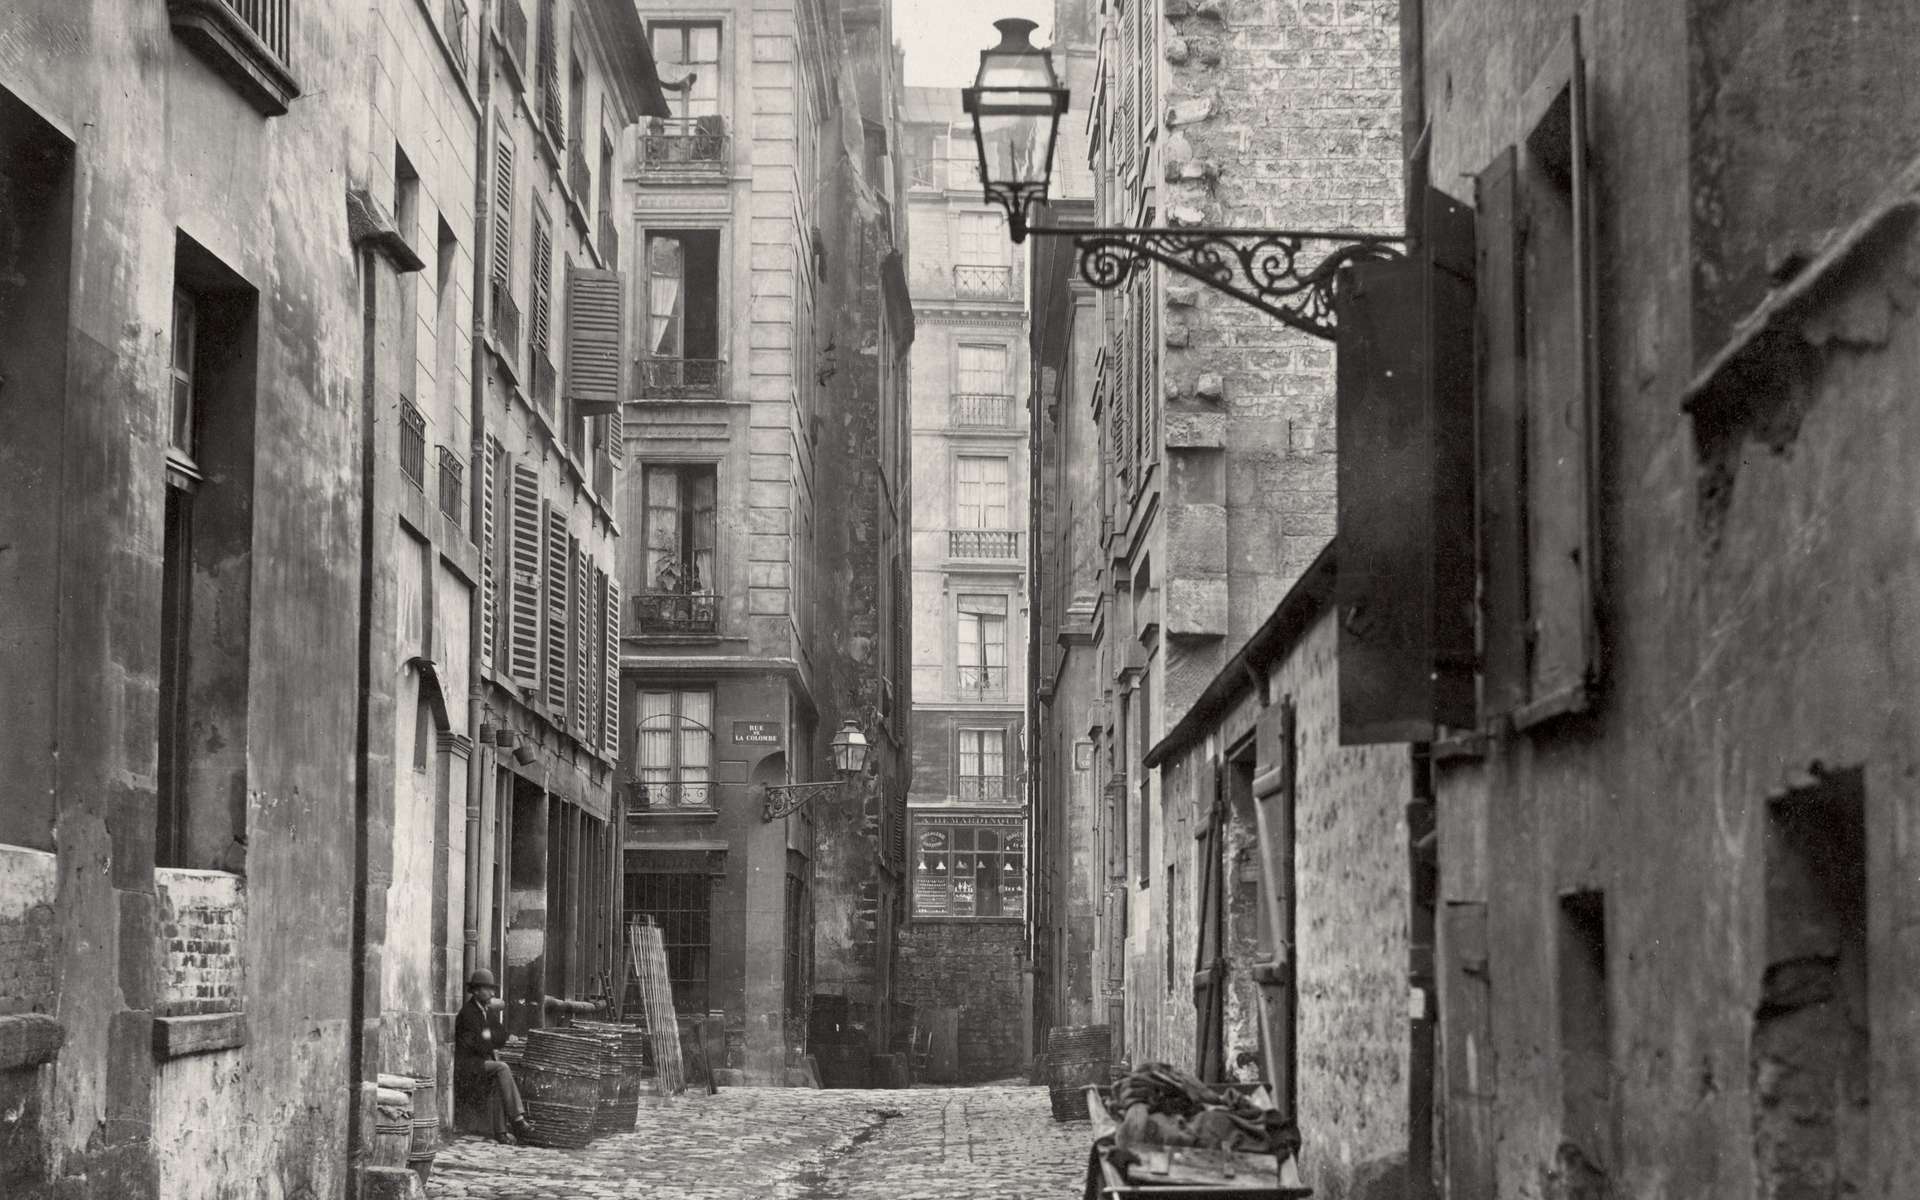 Photographie de la rue Basse des Ursins, Paris, vers 1855 par Charles Marville. State Library Victoria, Melbourne, Australie. © Domaine public